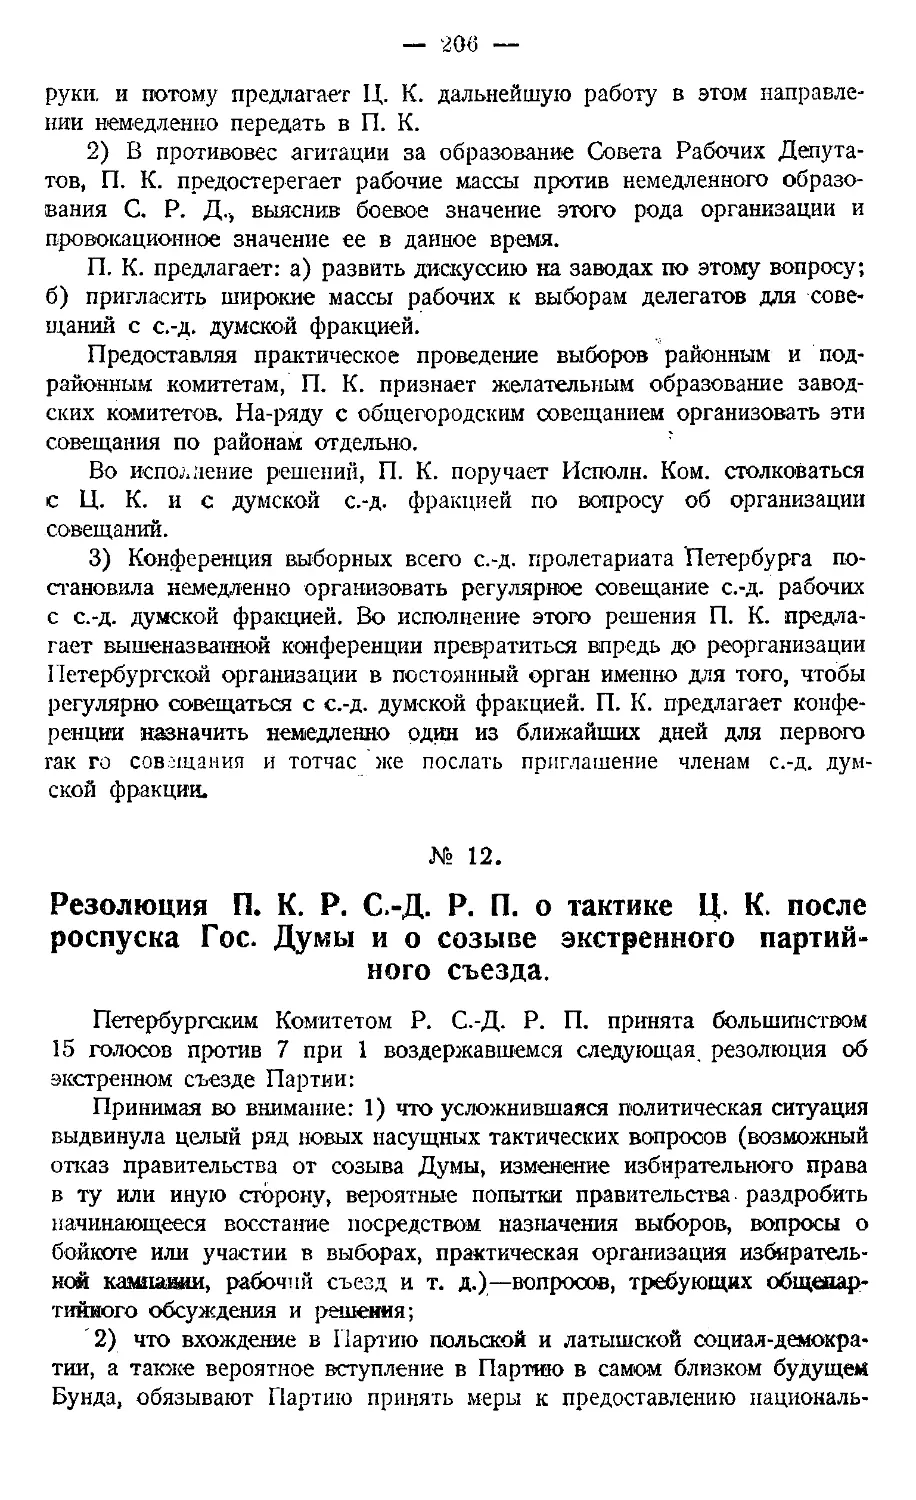 № 12. Резолюция протеста П. К. против оппортунистической тактики Ц. К. после роспуска Первой Гос. Думы.